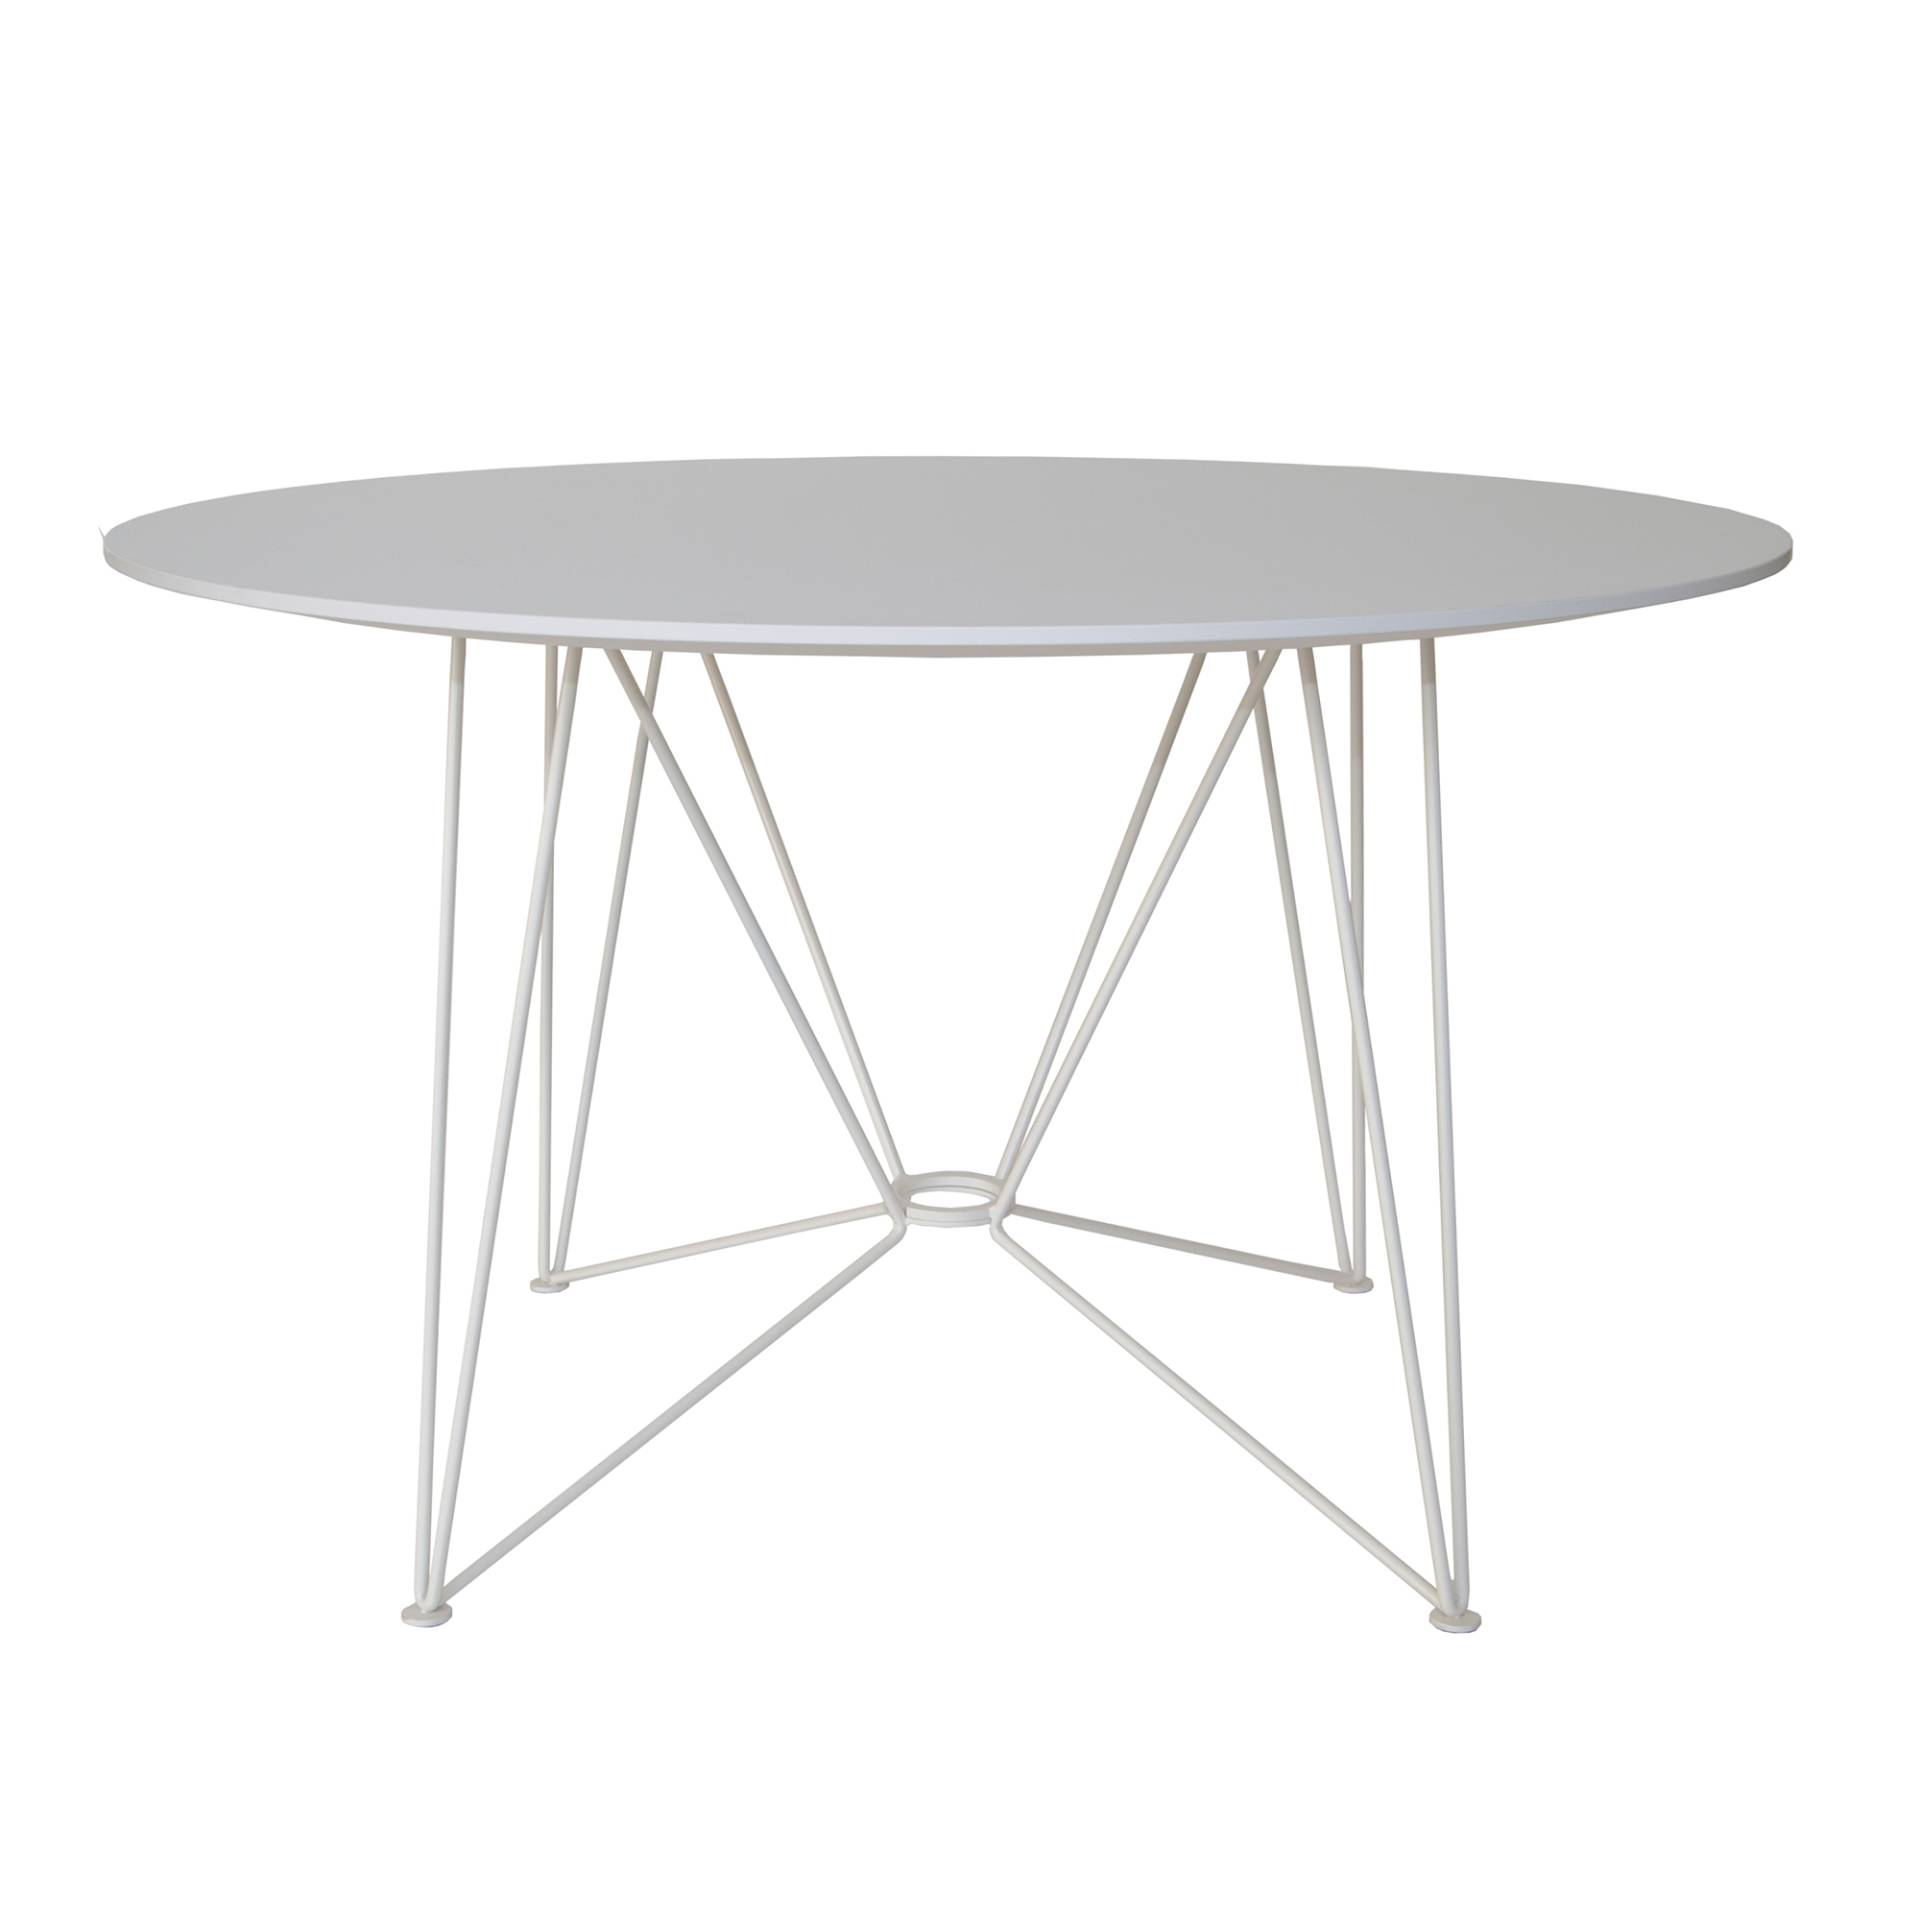 Acapulco Design - The Ring Table Esstisch HPL Ø120cm - weiß/Tischplatte HPL/Gestell Stahl pulverbeschichtet/HxØ 74x120cm von Acapulco Design